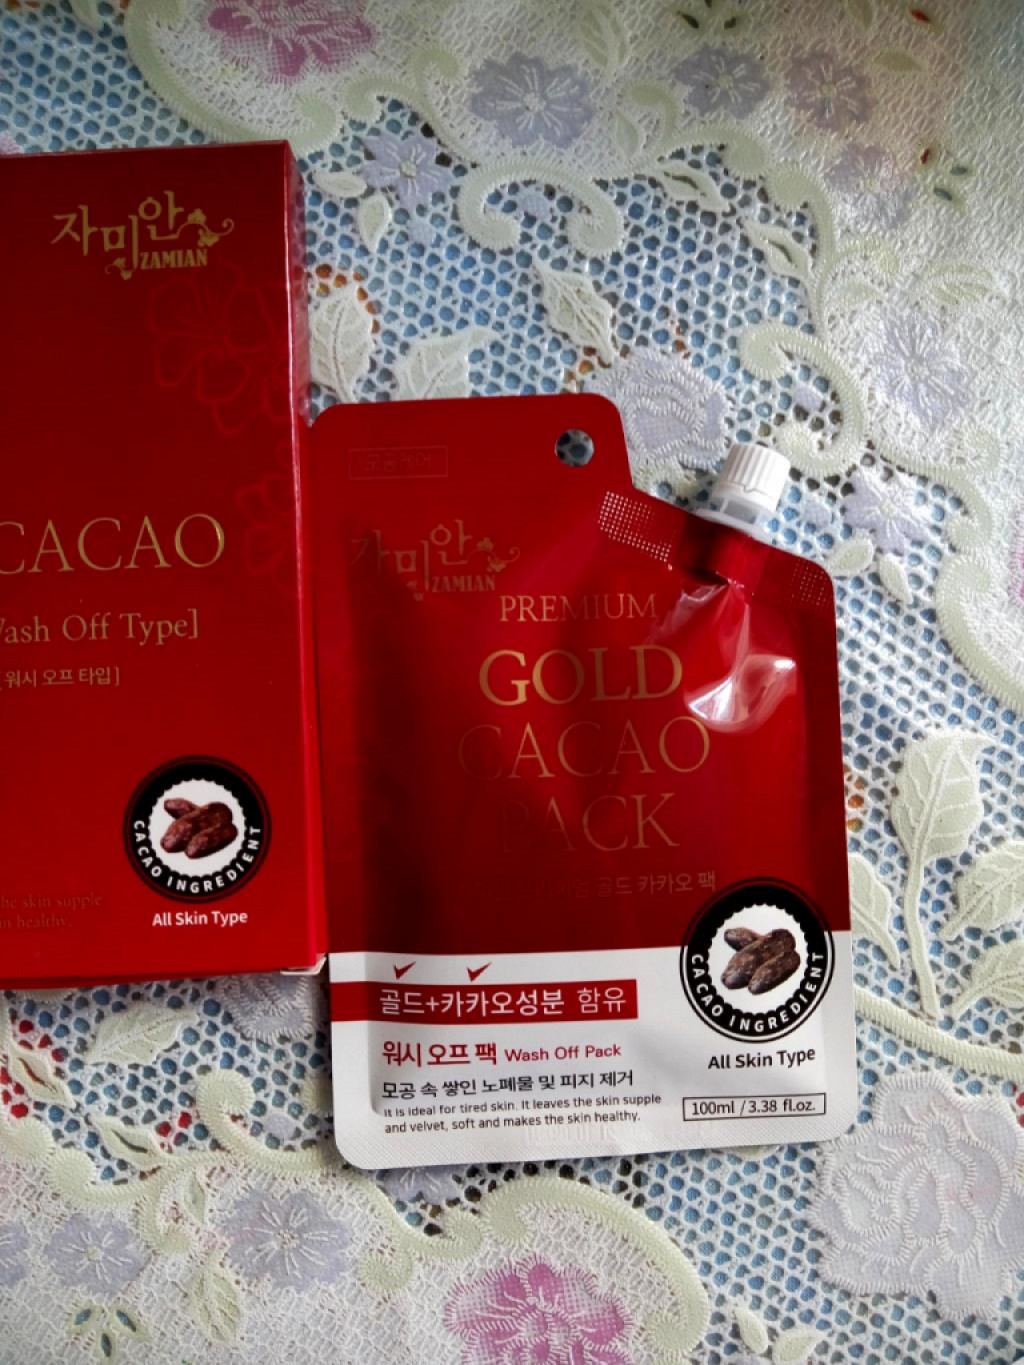 ZAMIAN Gold Cacao Pack Смываемая шоколадная маска №1 по продажам в Южной Корее (по крайней мере нам так говорят)!